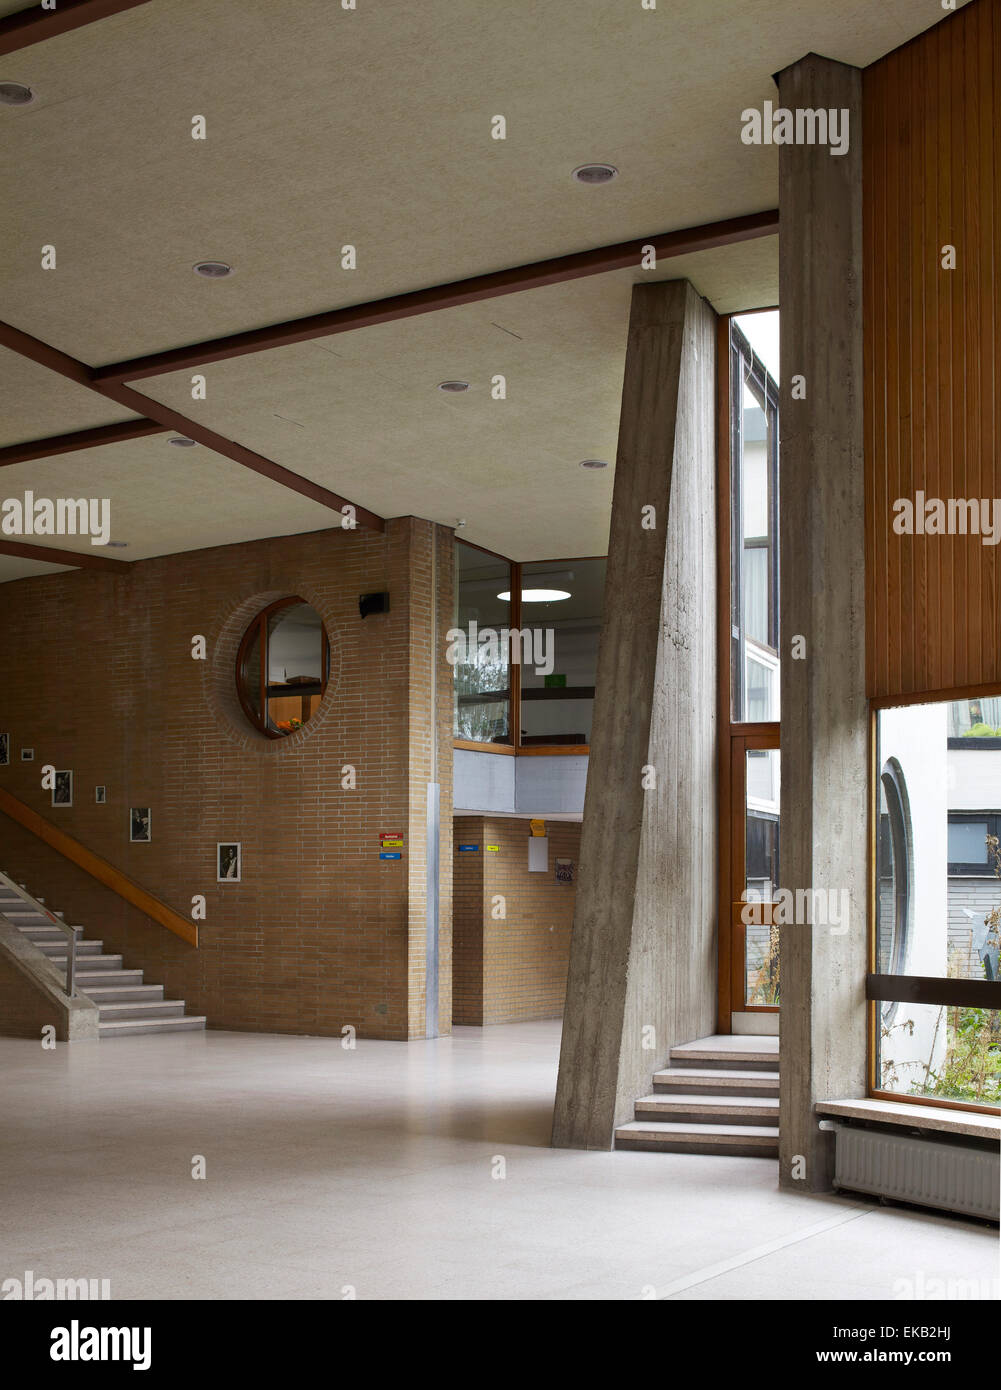 Zirkulation Raum und Fenster in Eingangshalle. Scharouns Marl-Schule, Marl,  Deutschland. Architekt: Hans Scharoun, 1975 Stockfotografie - Alamy